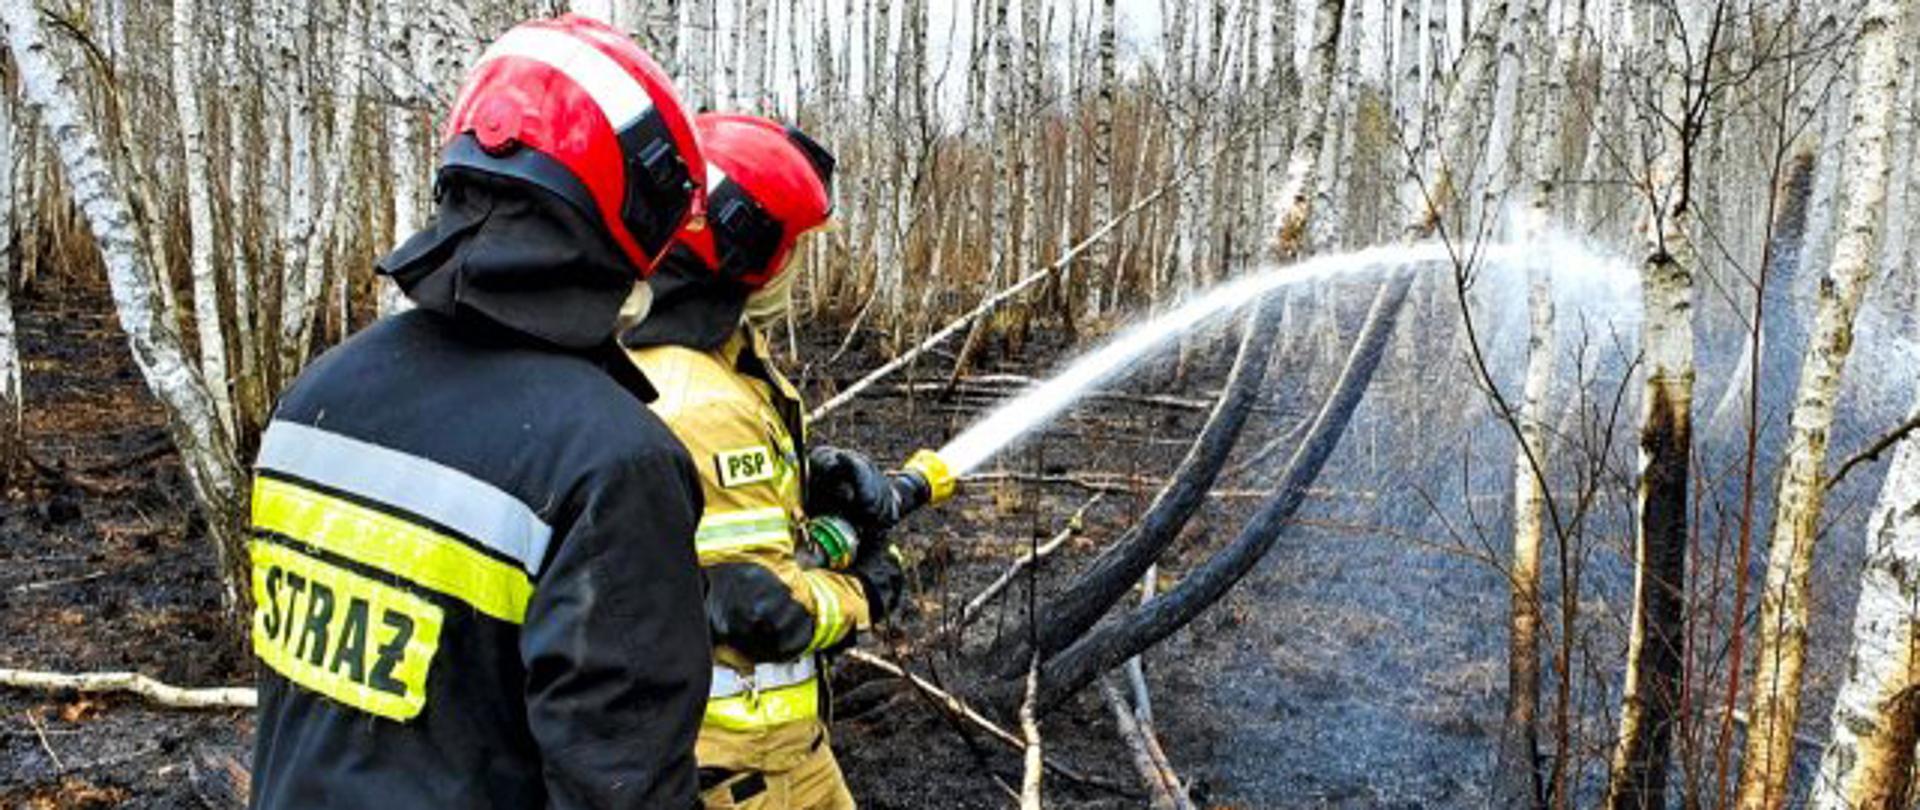 Działania podczas pożaru w Narodowym Parku Biebrzańskim. Dwóch strażaków z linią gaśniczą podczas gaszenia młodego lasu.